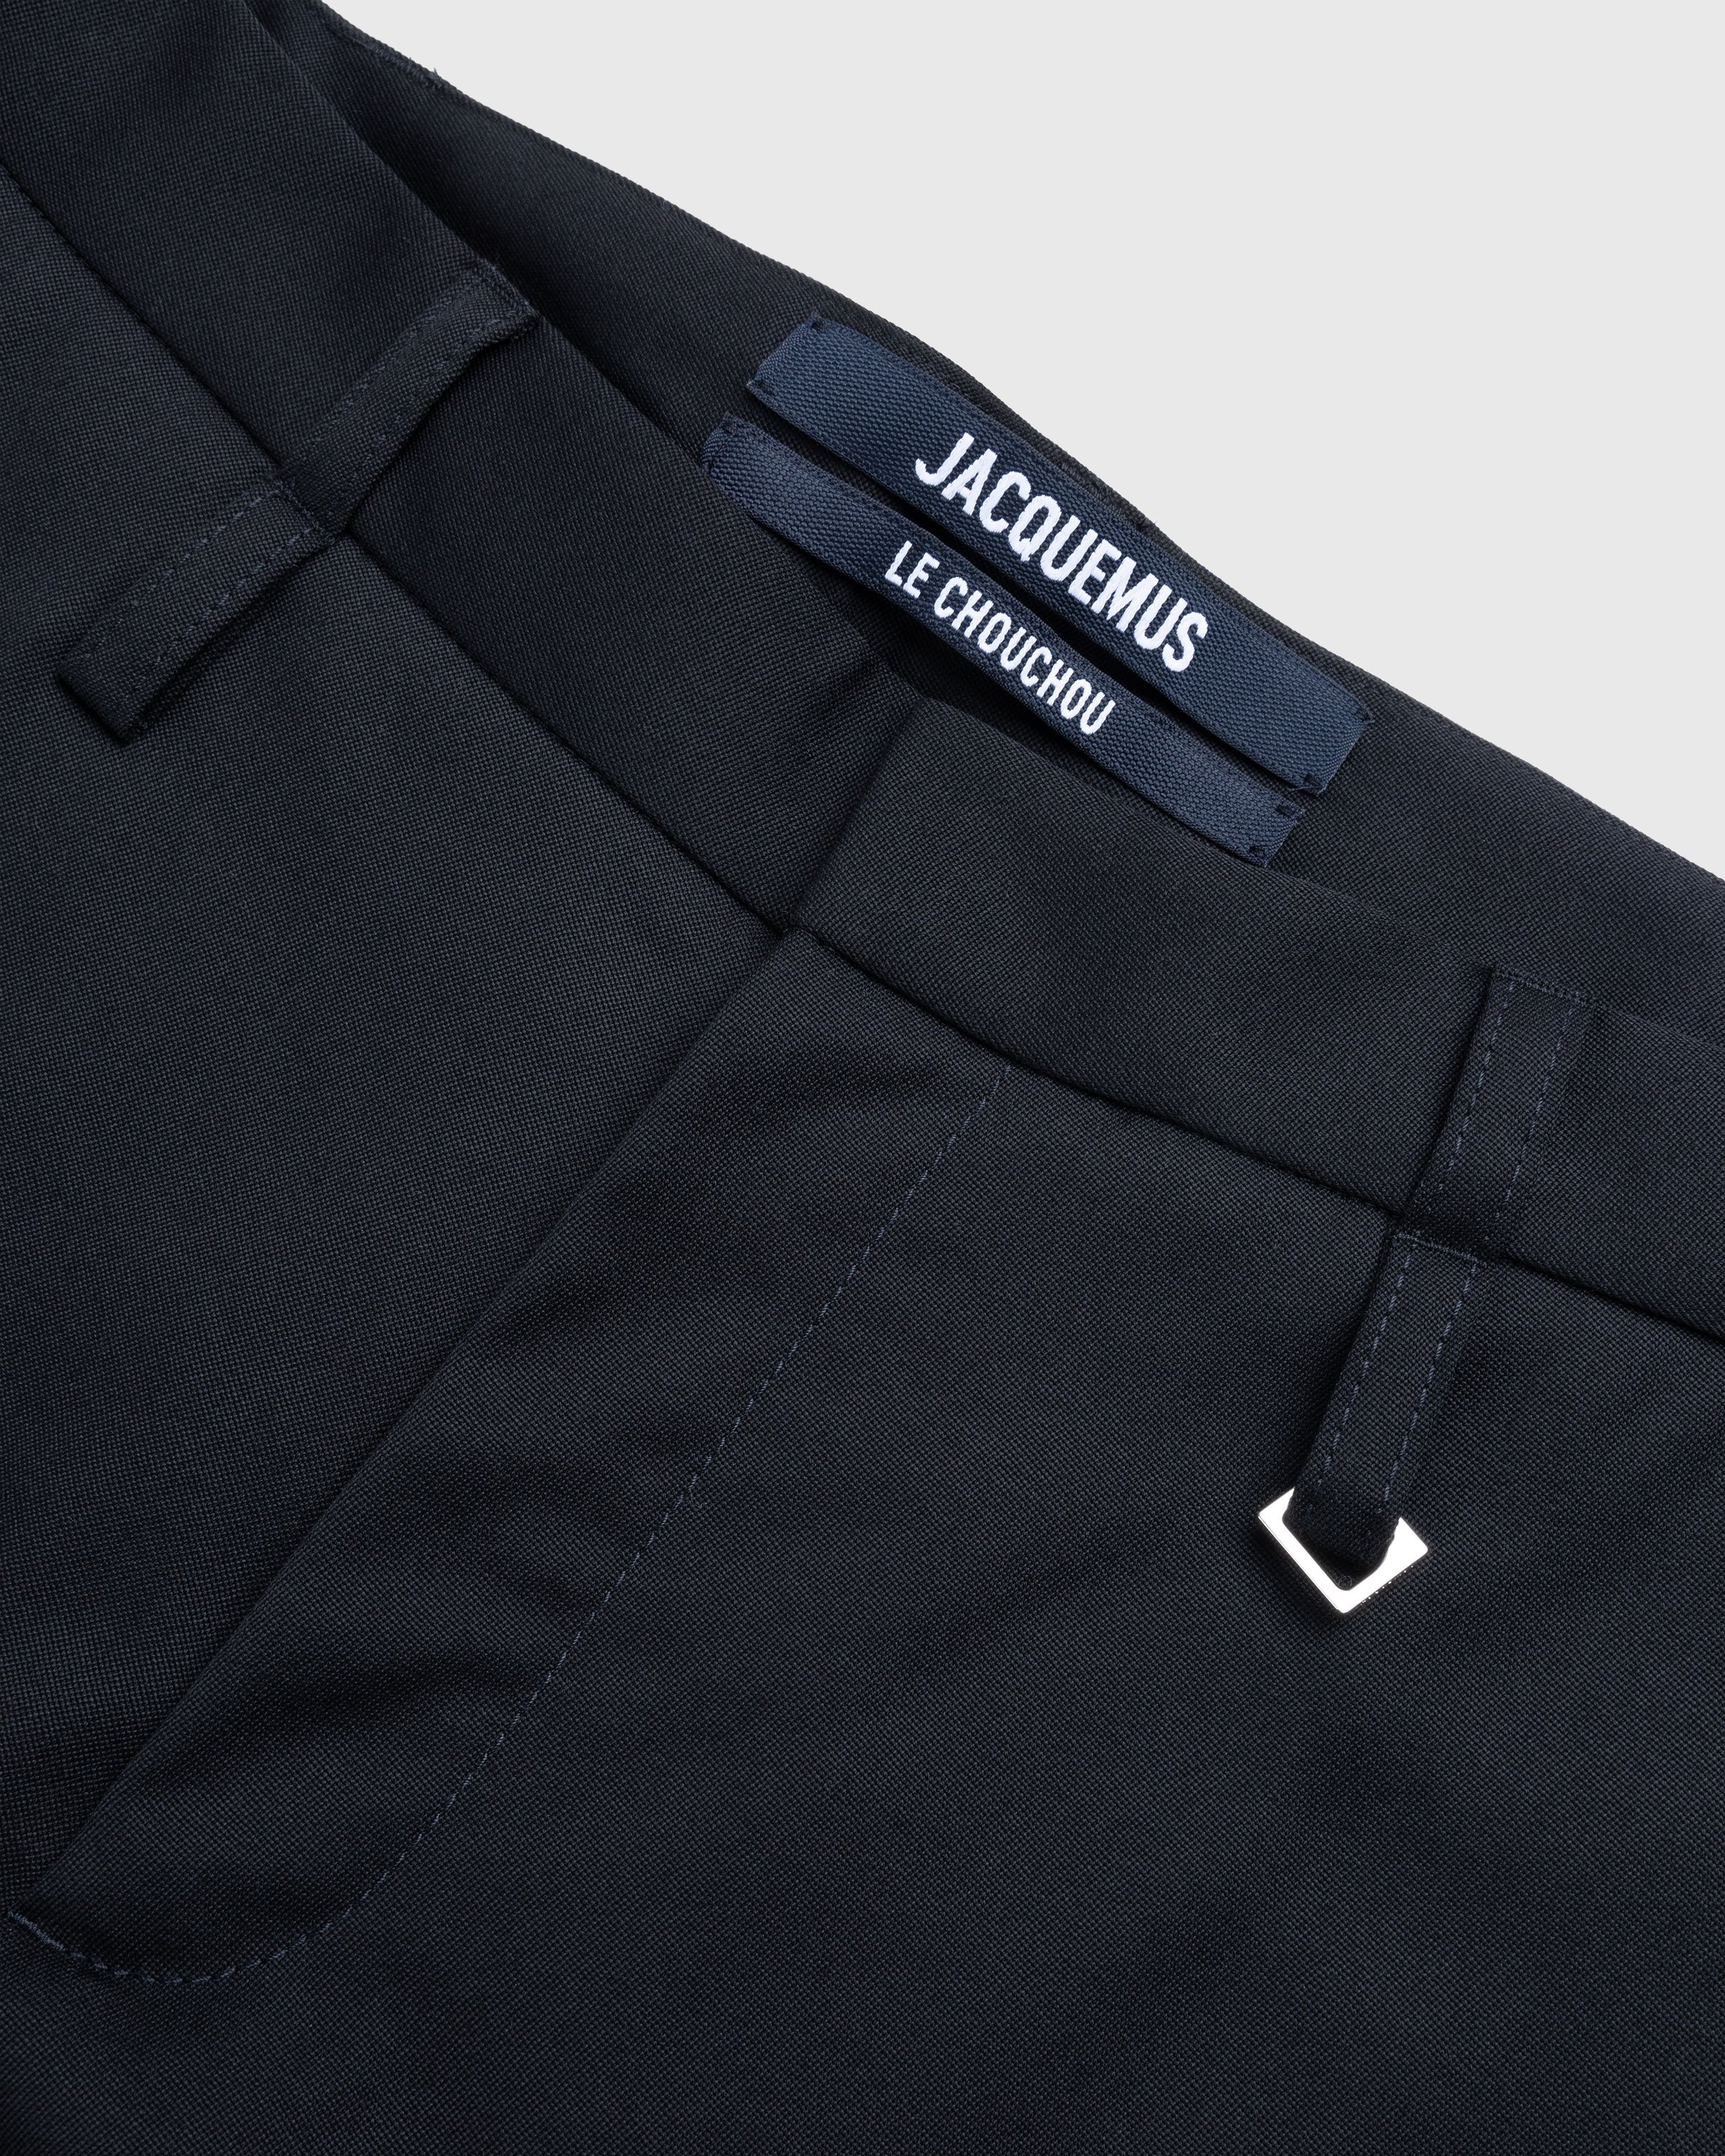 JACQUEMUS - Le Pantalon Piccinni Black - Clothing - BLACK - Image 6